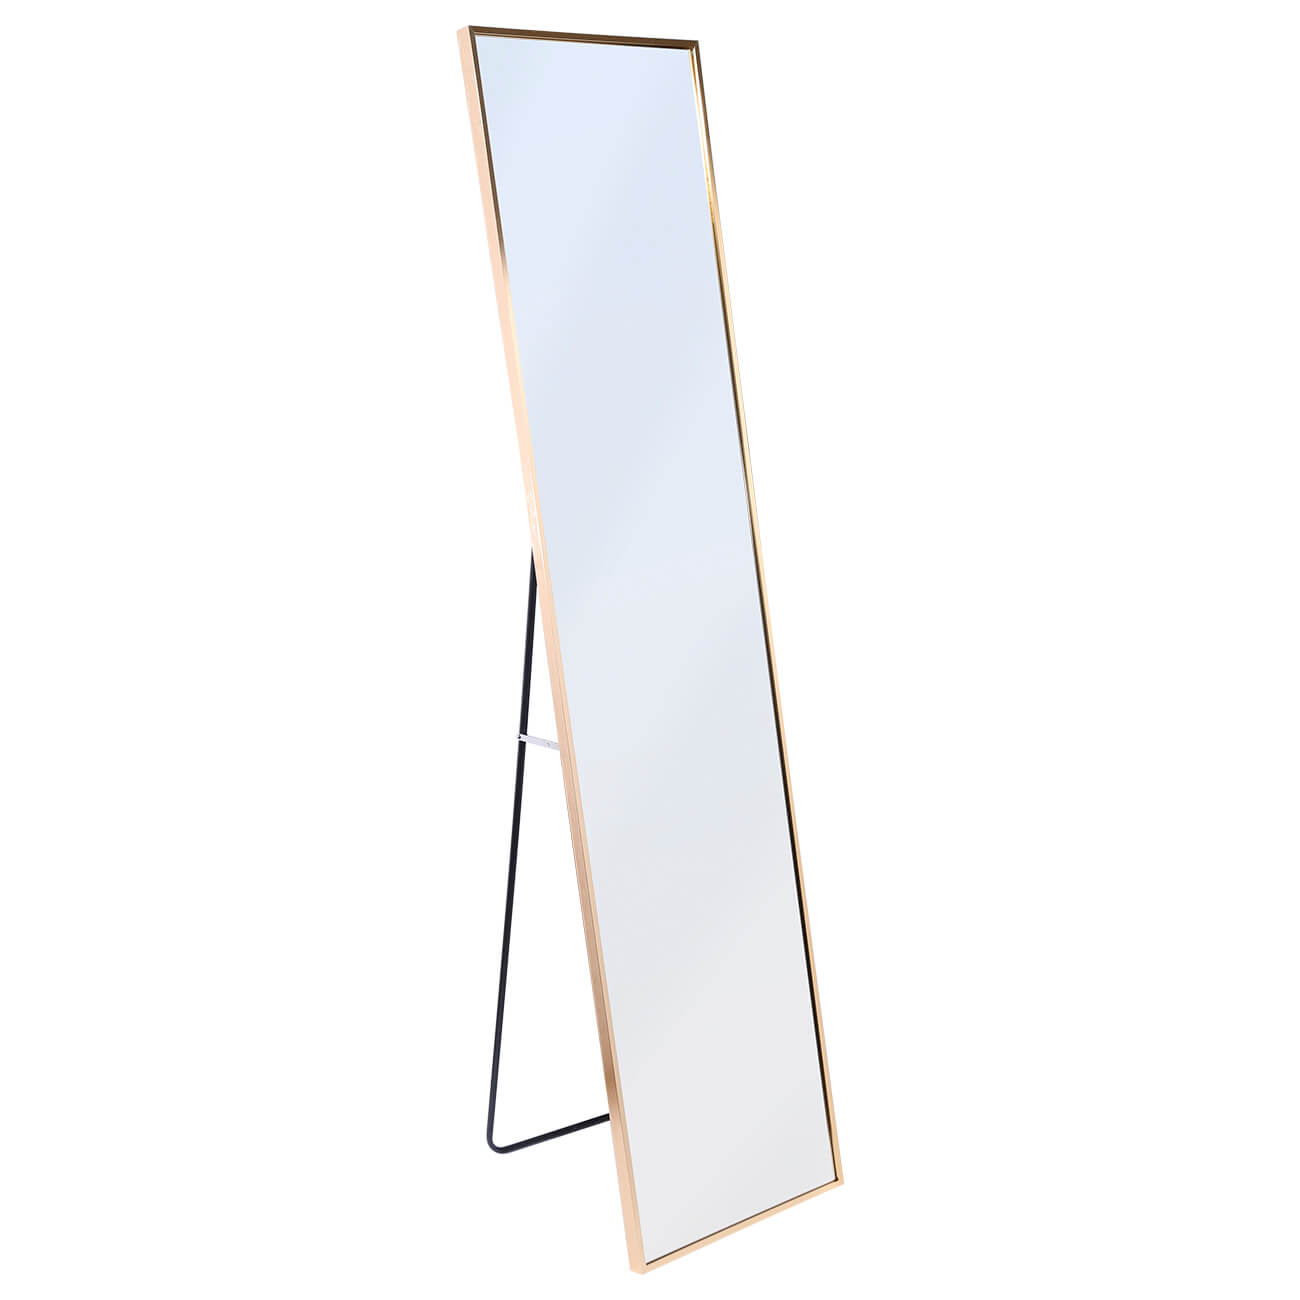 Зеркало напольное, 35х150 см, металл, прямоугольное, золотистое, Trend сувенир металл